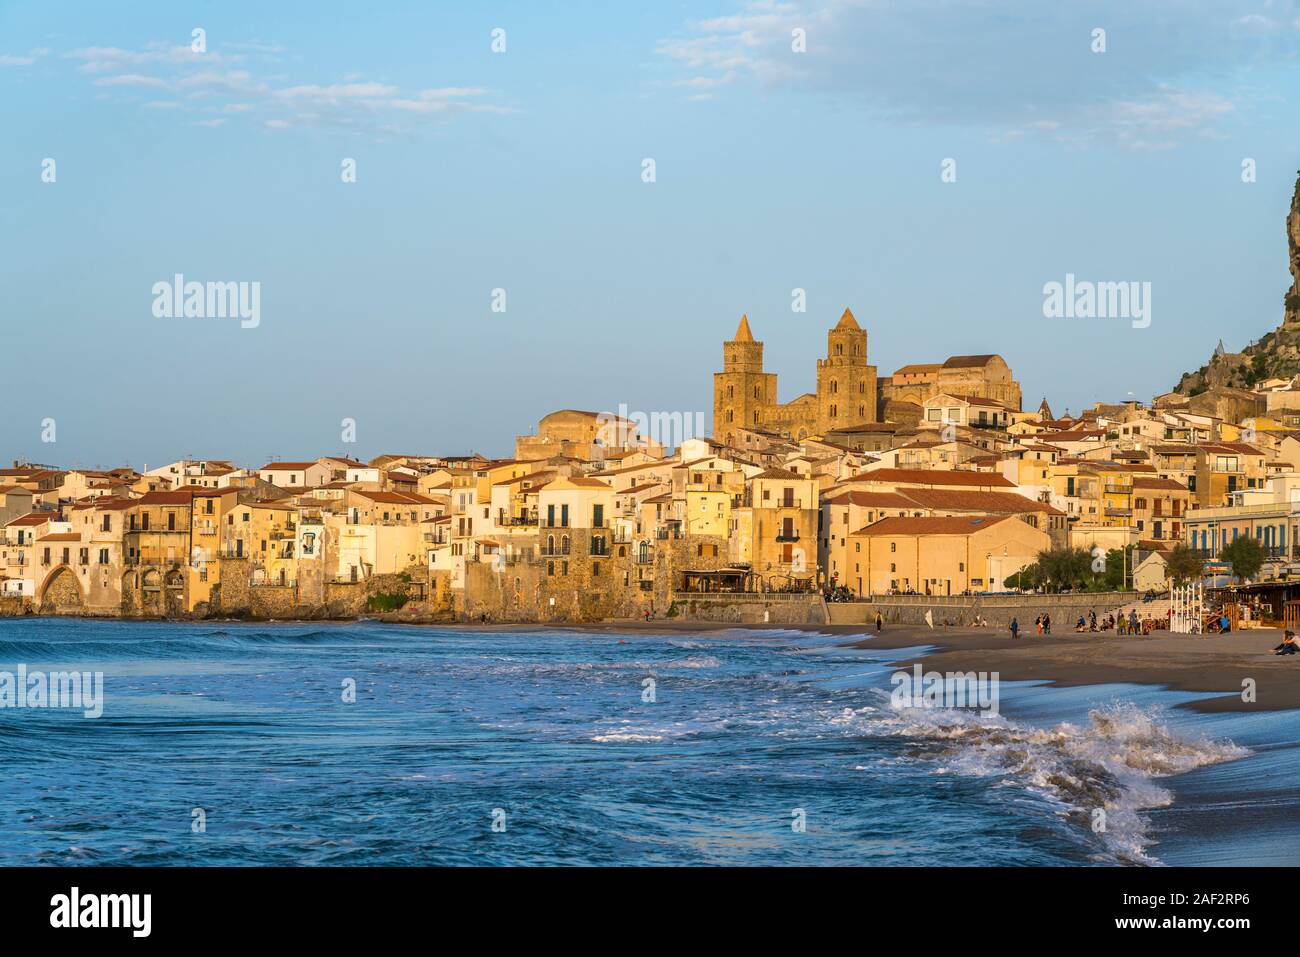 Strand Spiaggia Lungomare und die Altstadt mit der Kathedrale von Cefalu, Sizilien, Italien, Europa | Spiaggia Lungomare Strand und dem historischen Cent Stockfoto